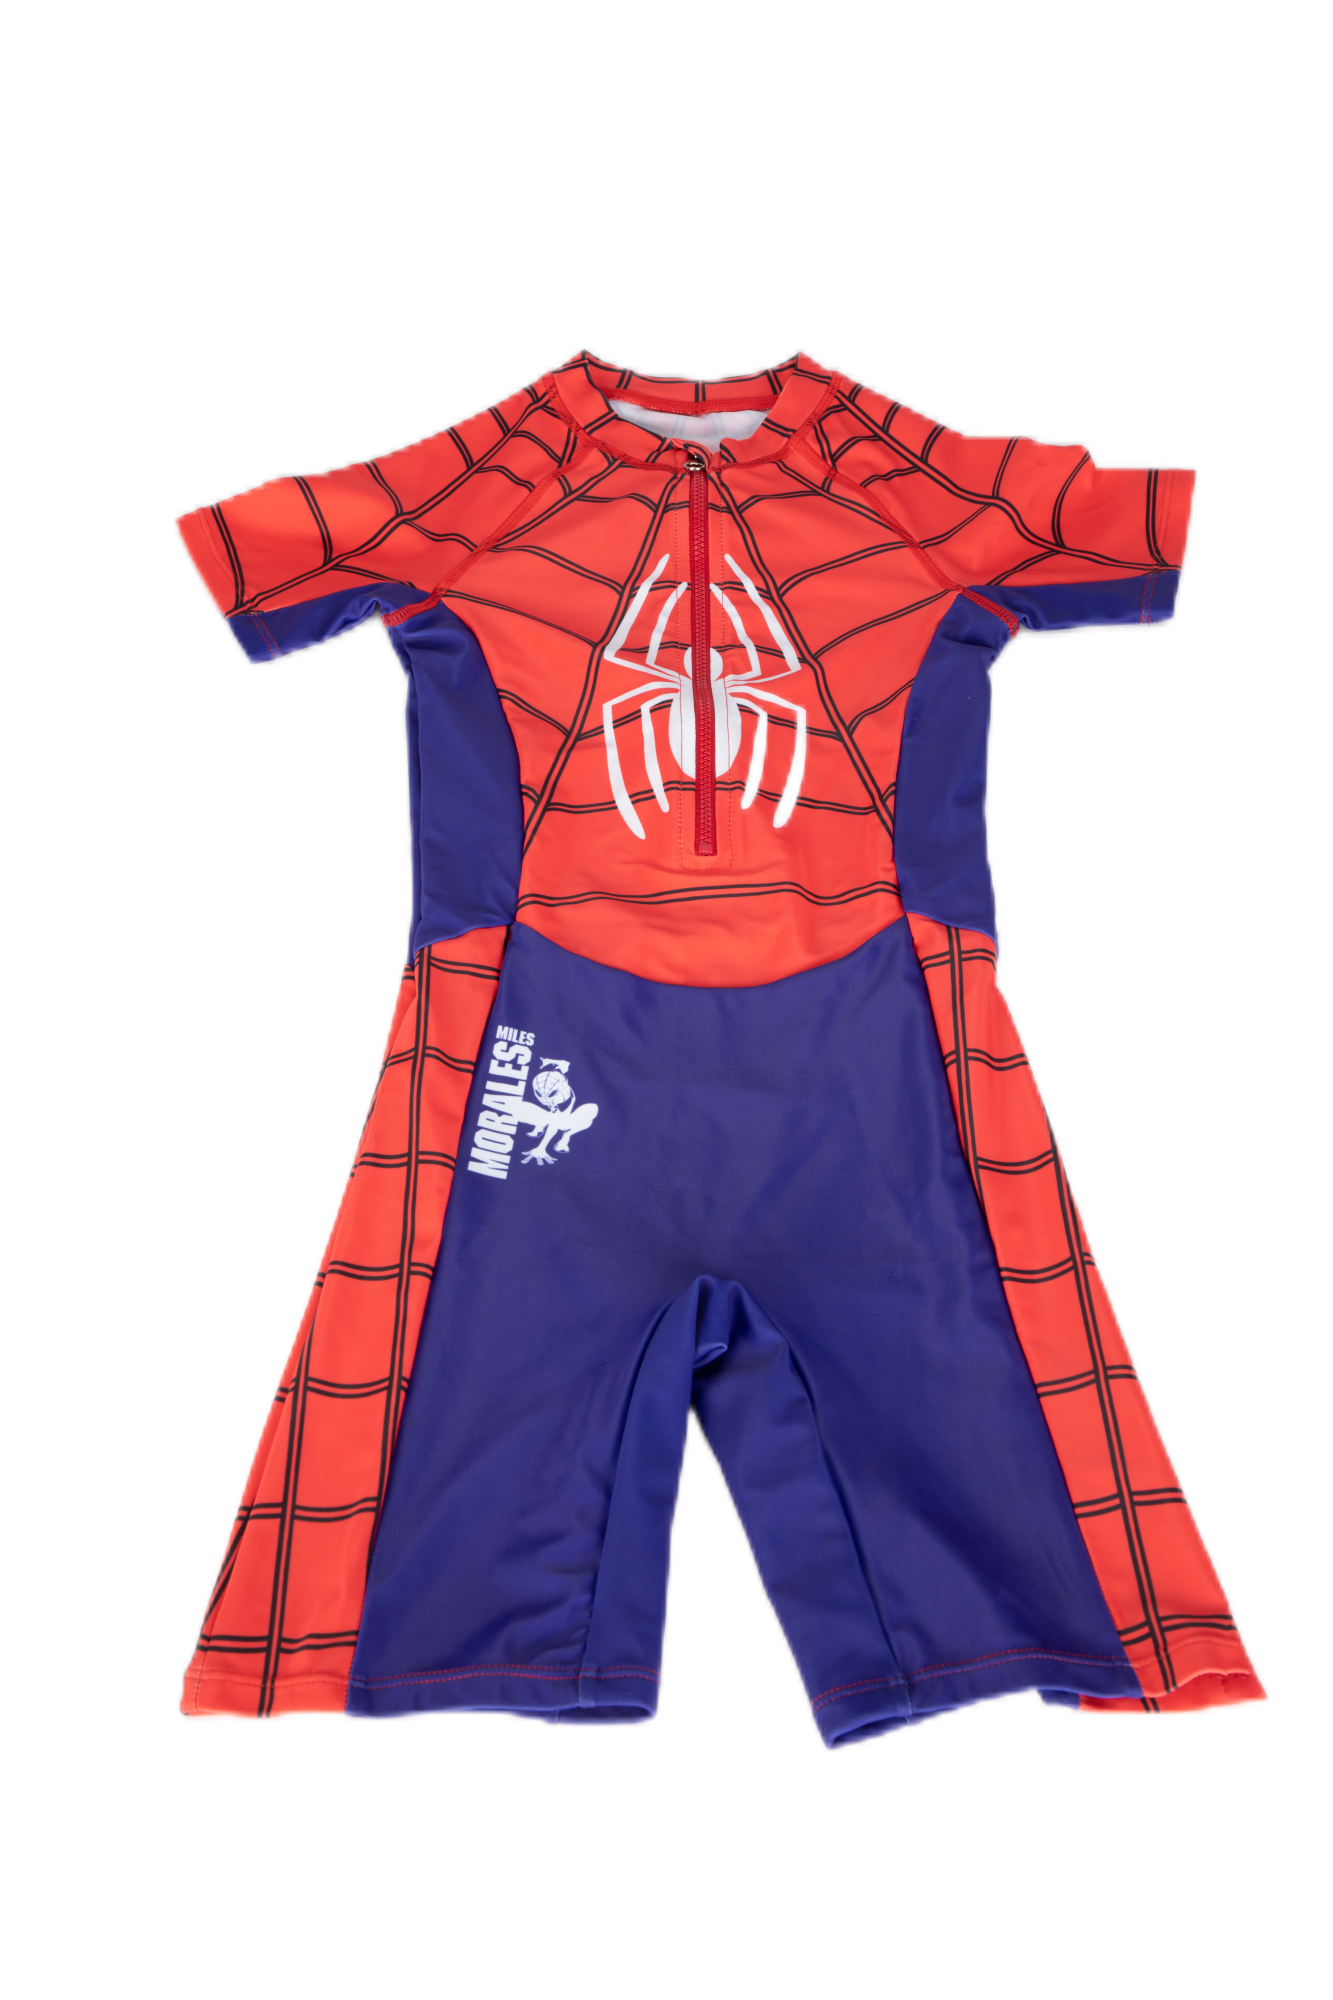 Marvel Spider-Man Children One-piece Swimsuit